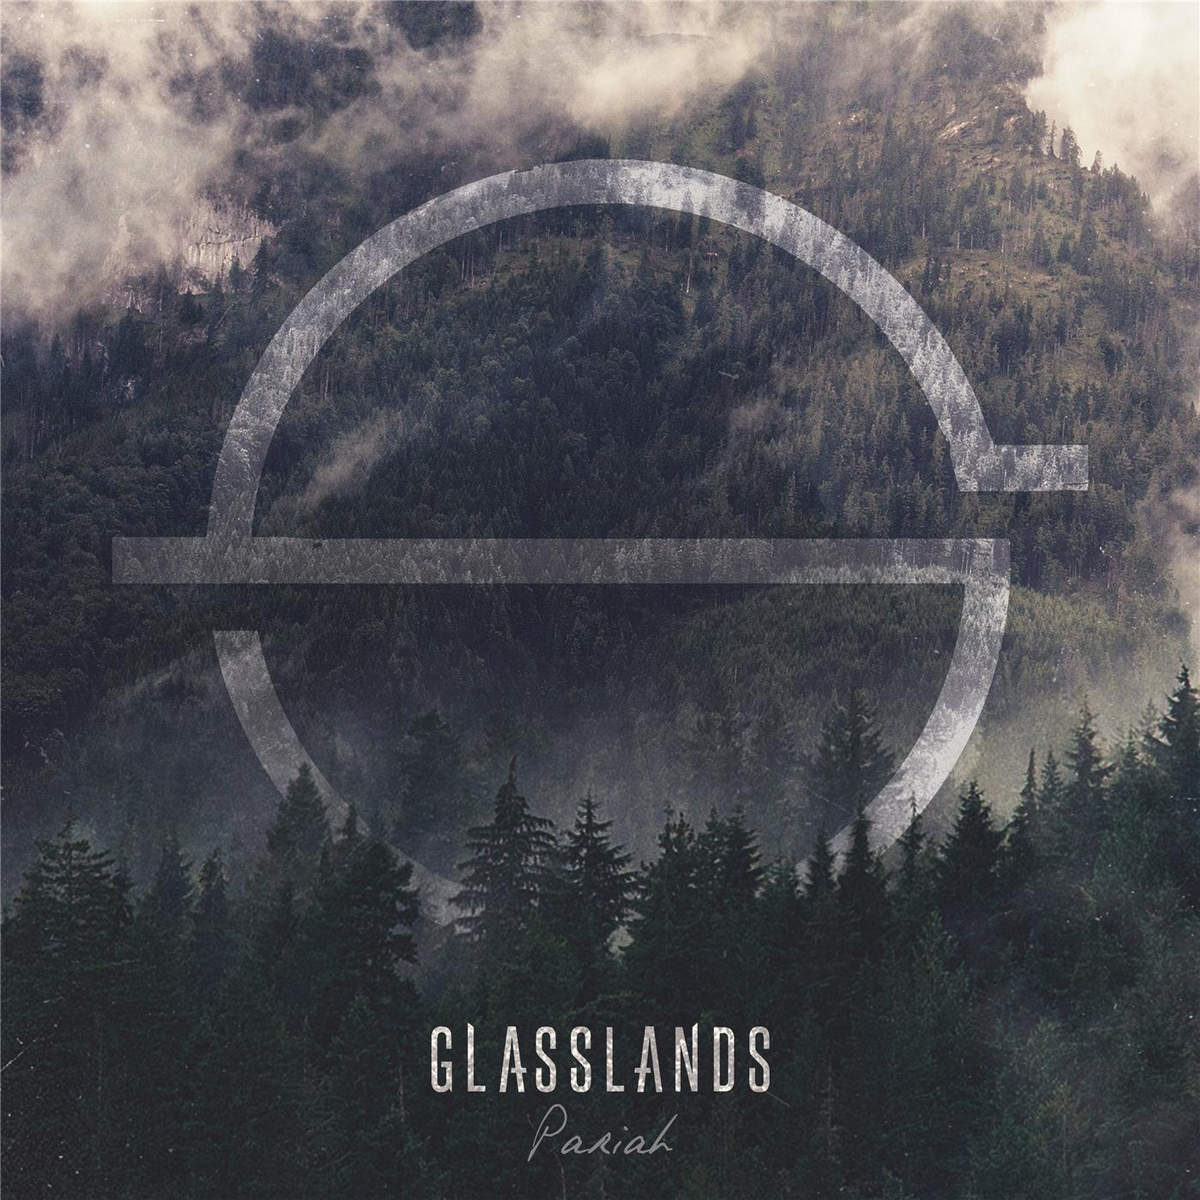 Glasslands - Pariah (2016) Album Info